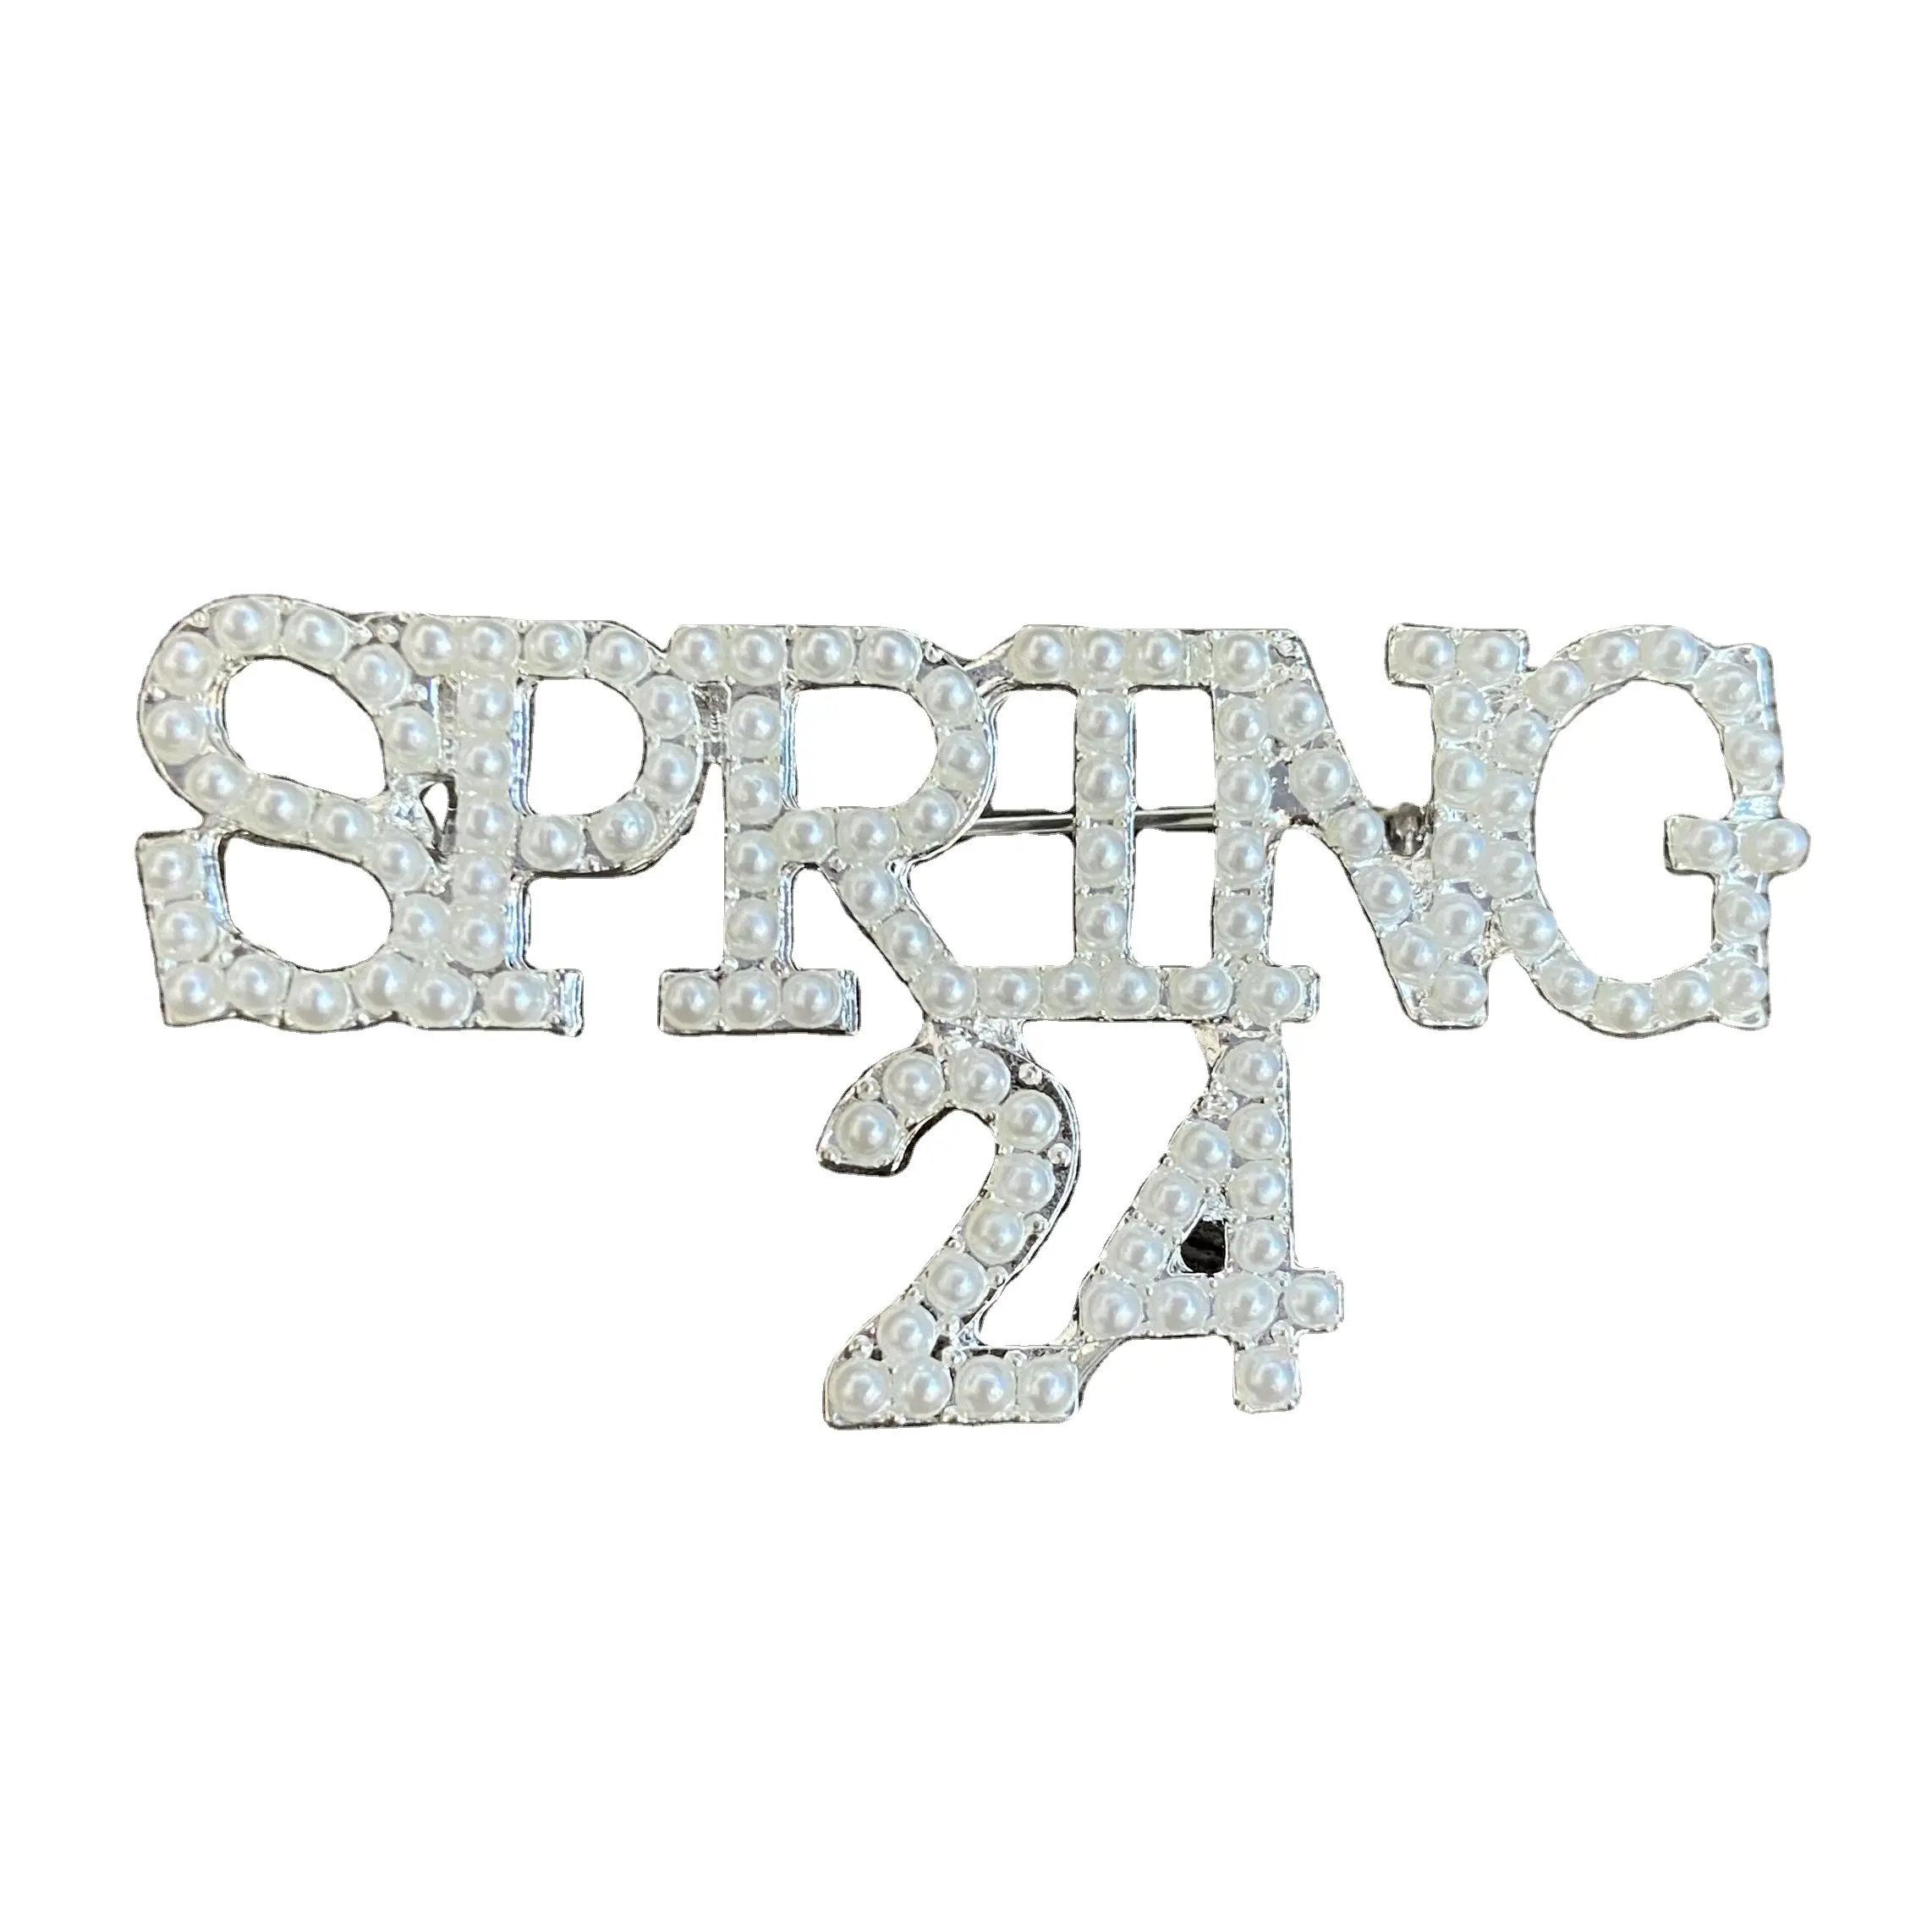 Moda nueva ropa personalizada hermandad de mujeres broche de perlas regalo de graduación perla SPR24 primavera 24 Pin de solapa